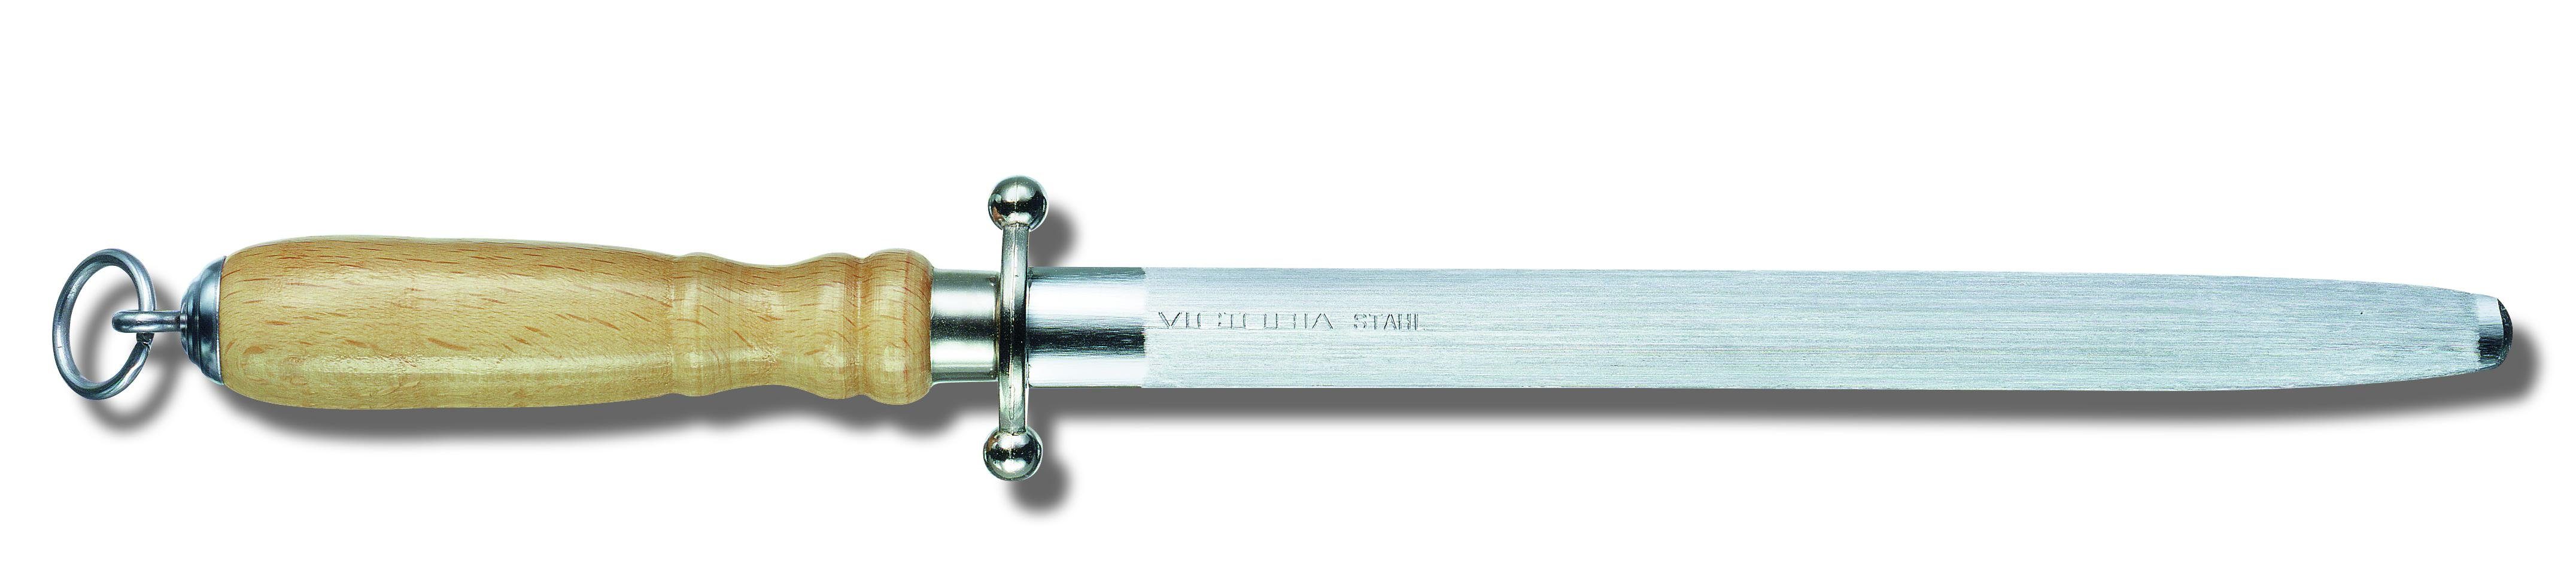 Victorinox Taschenmesser Haushaltstahl 20 cm, oval, Buchenholzgriff